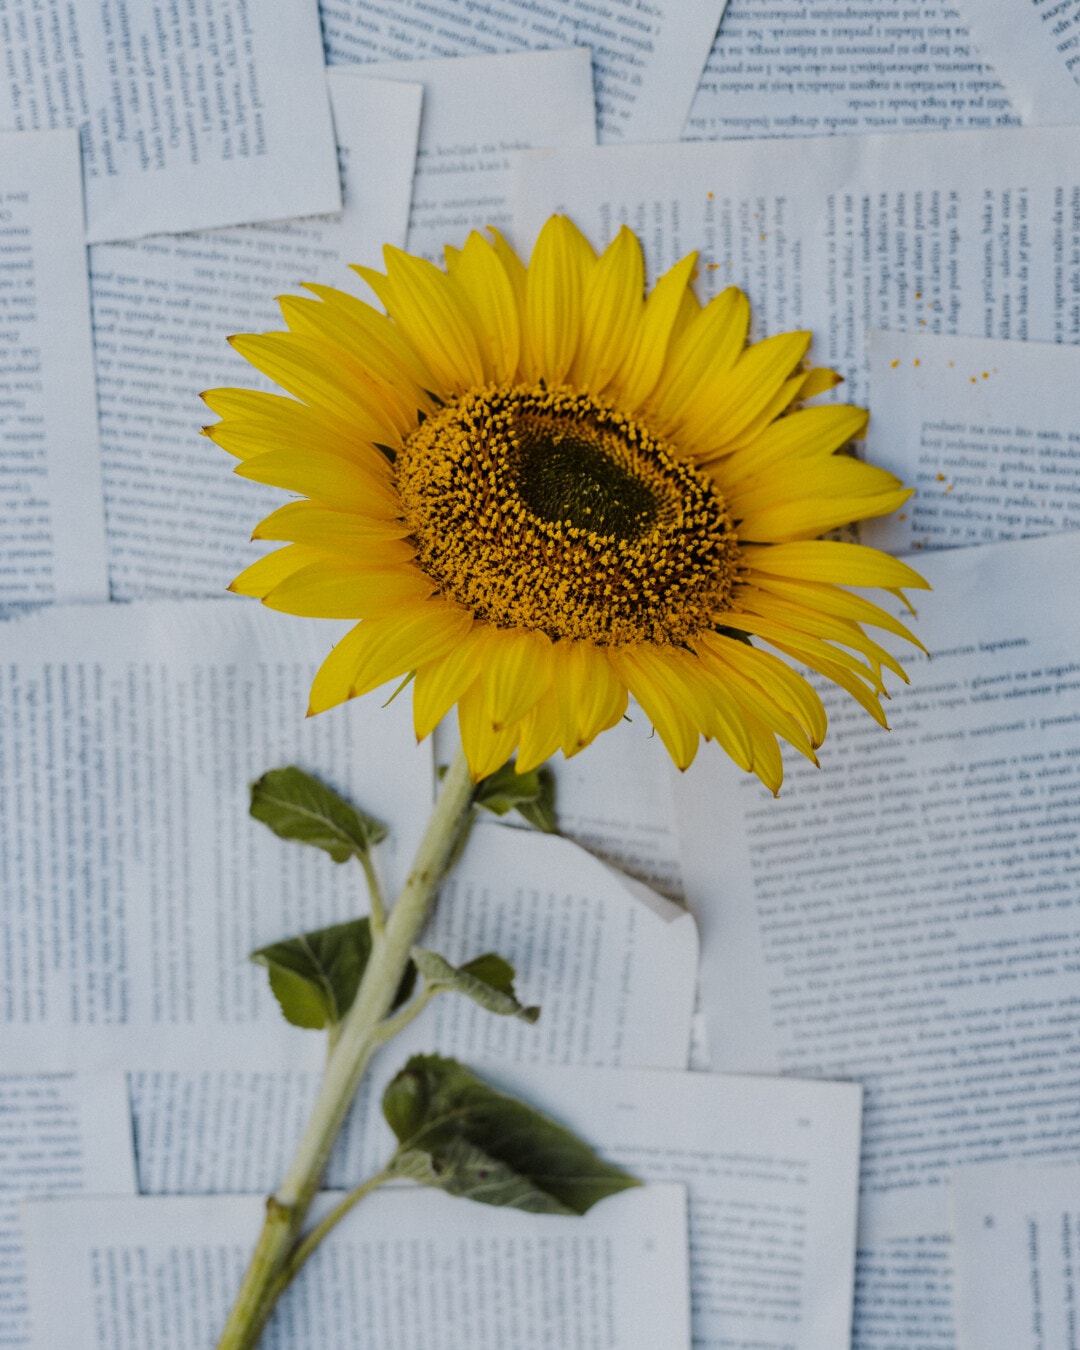 sunflower, petals, pistil, pollen, paper, newspaper, yellow, petal, bright, stamen